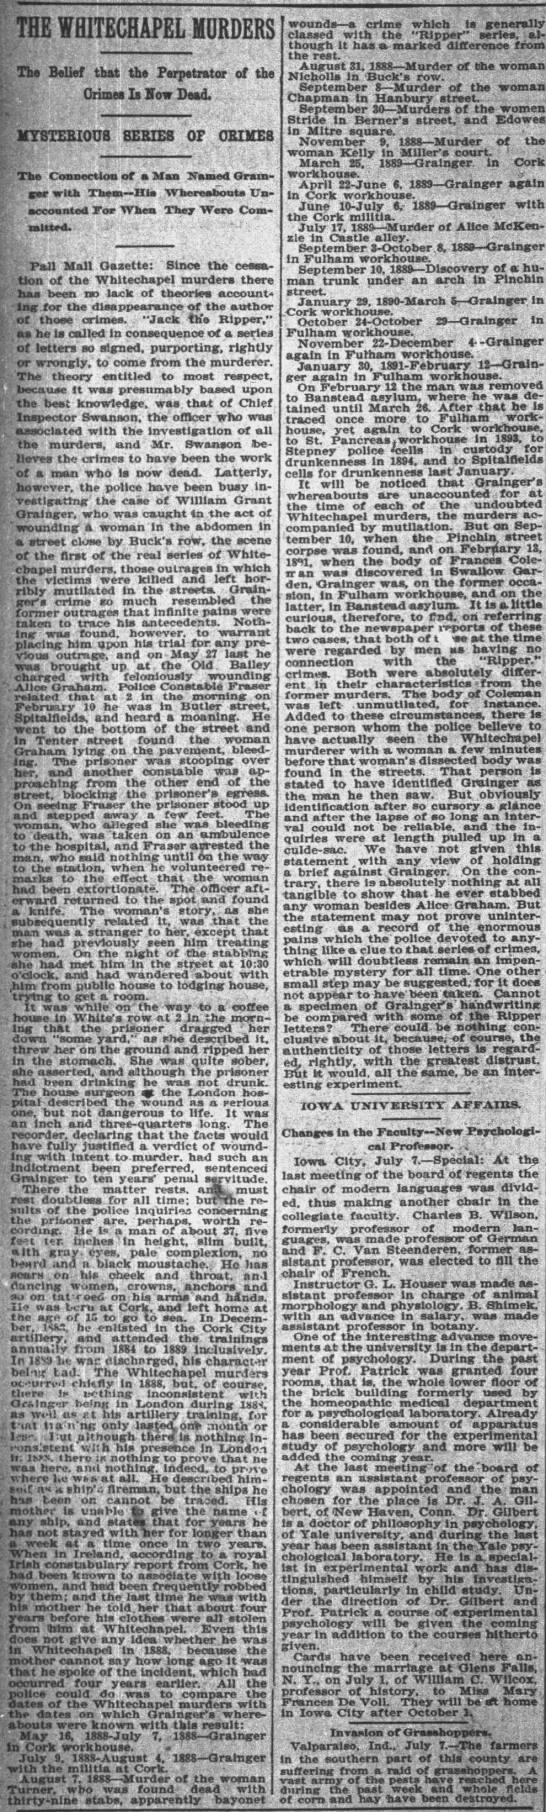 Jack the Ripper (Whitechapel Murderer) is believed to be dead, 1895 - 